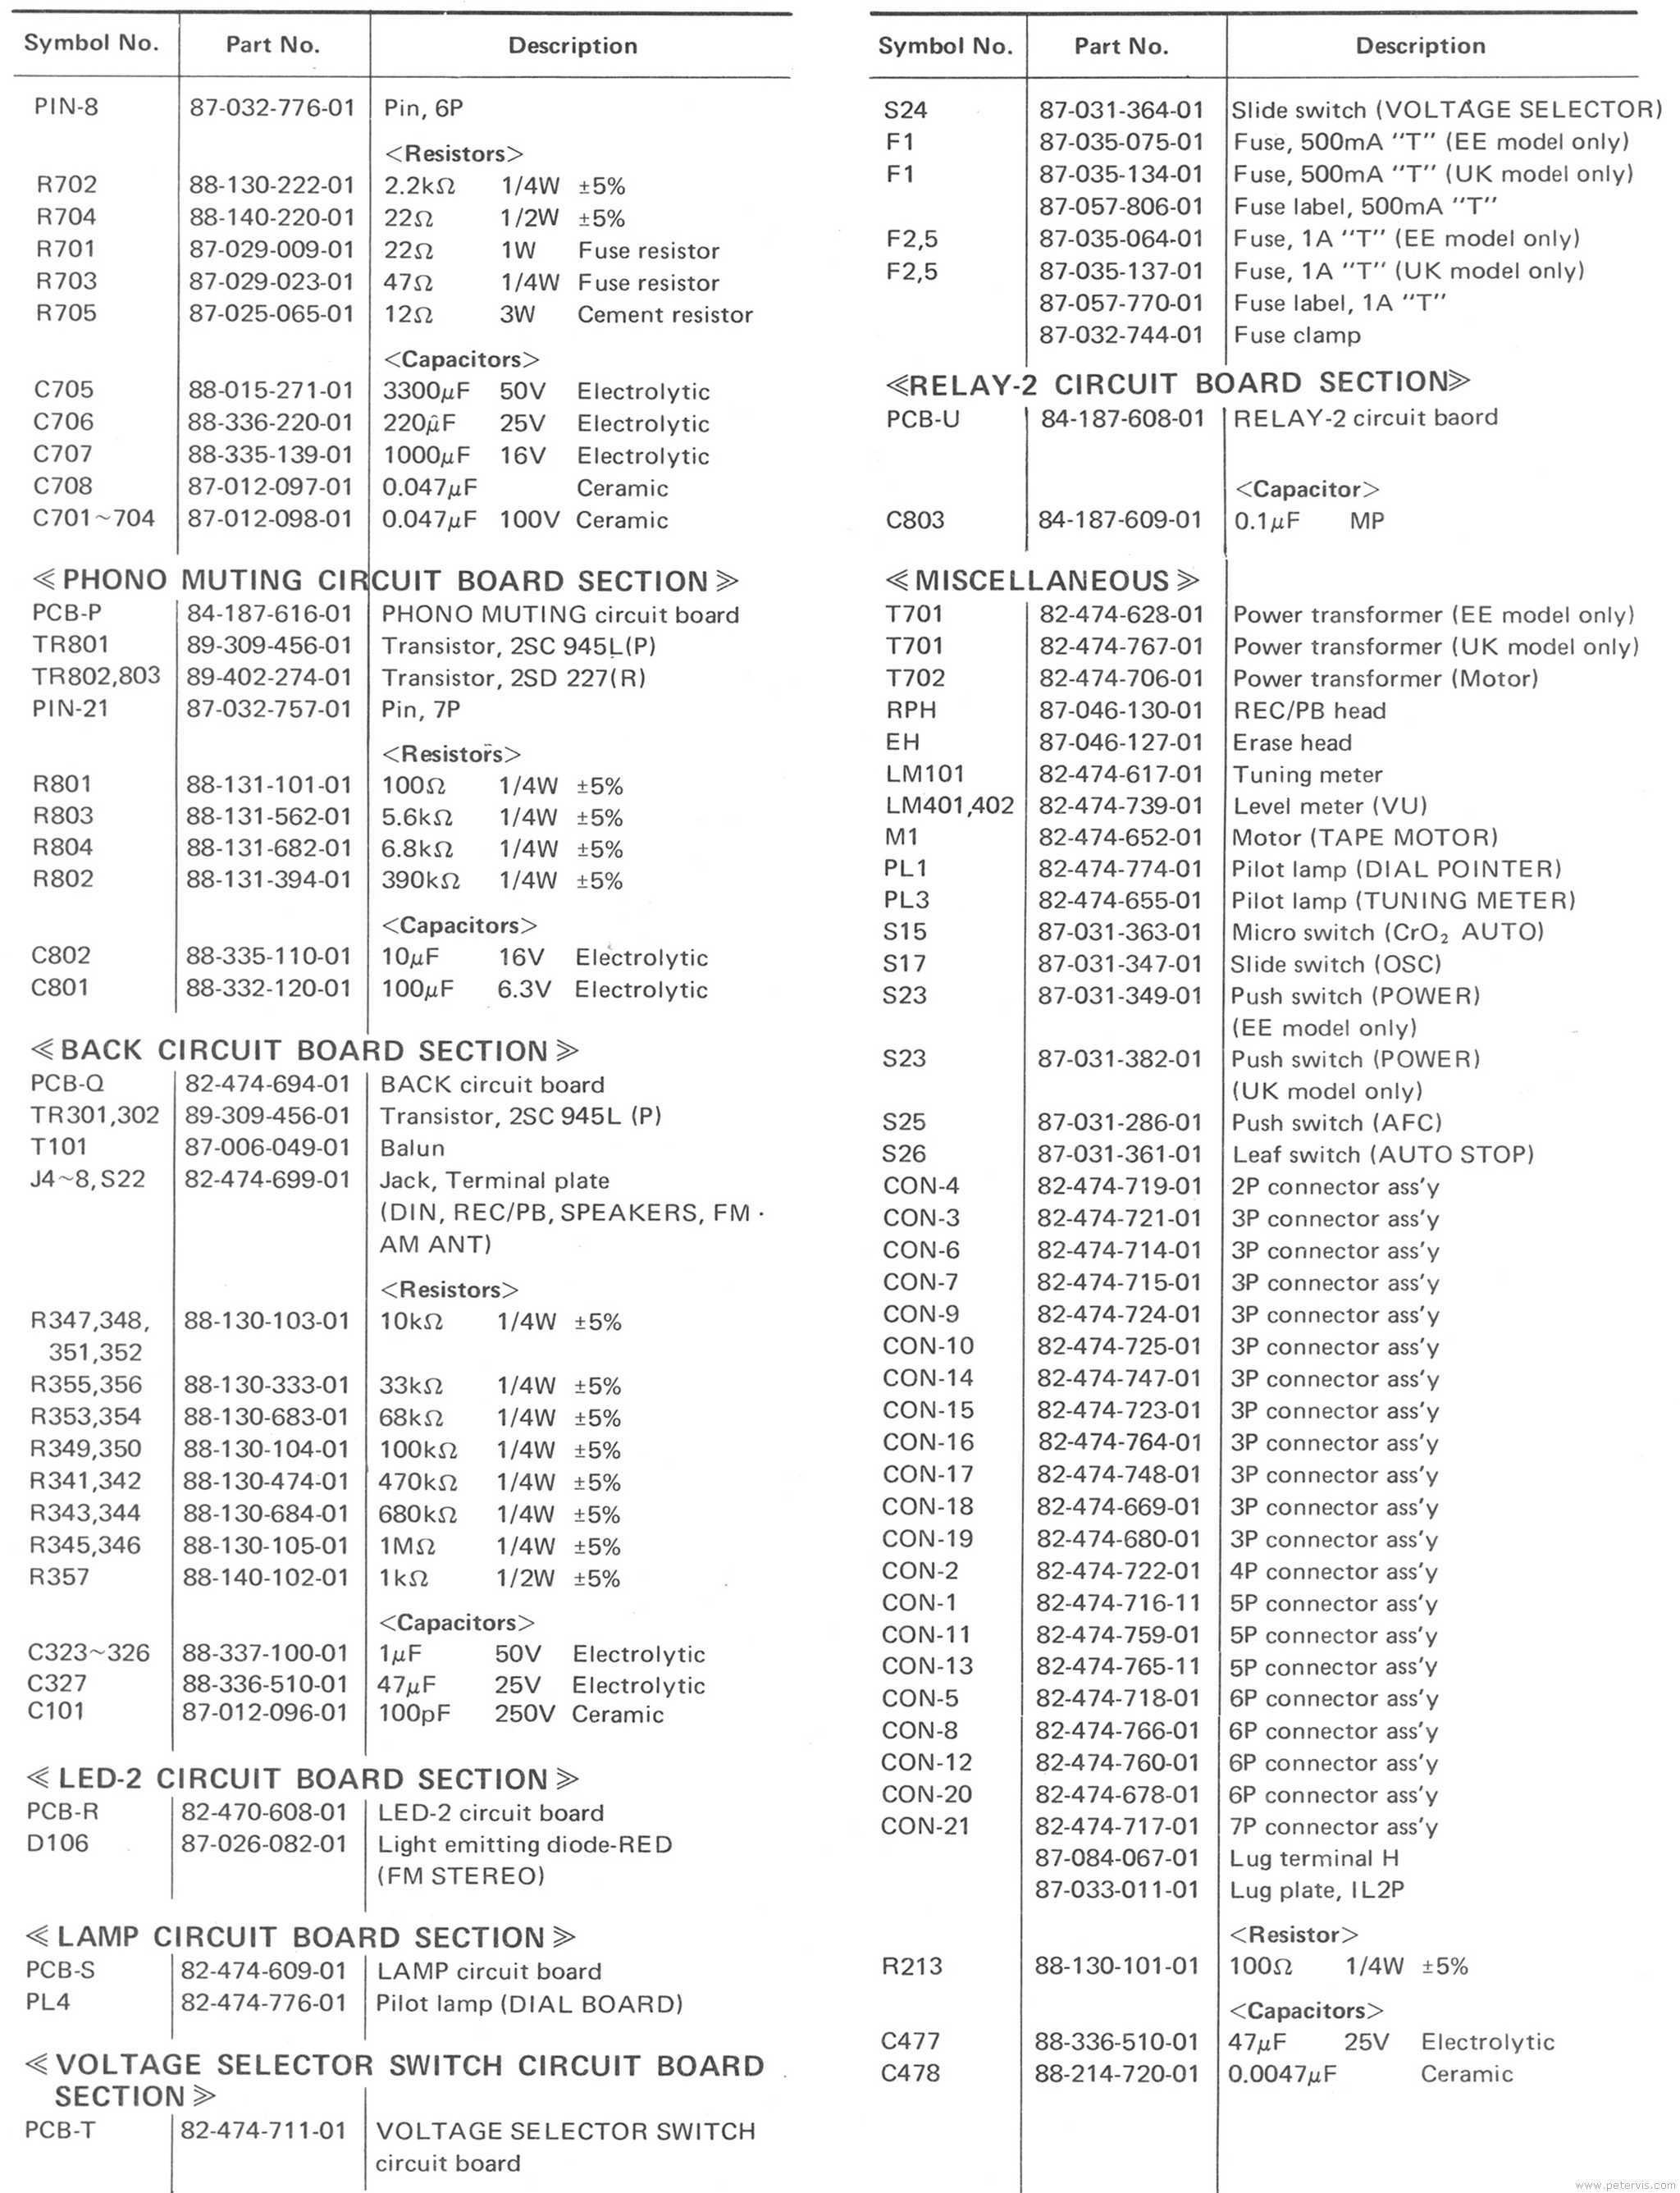 Aiwa AF-5050 Component List